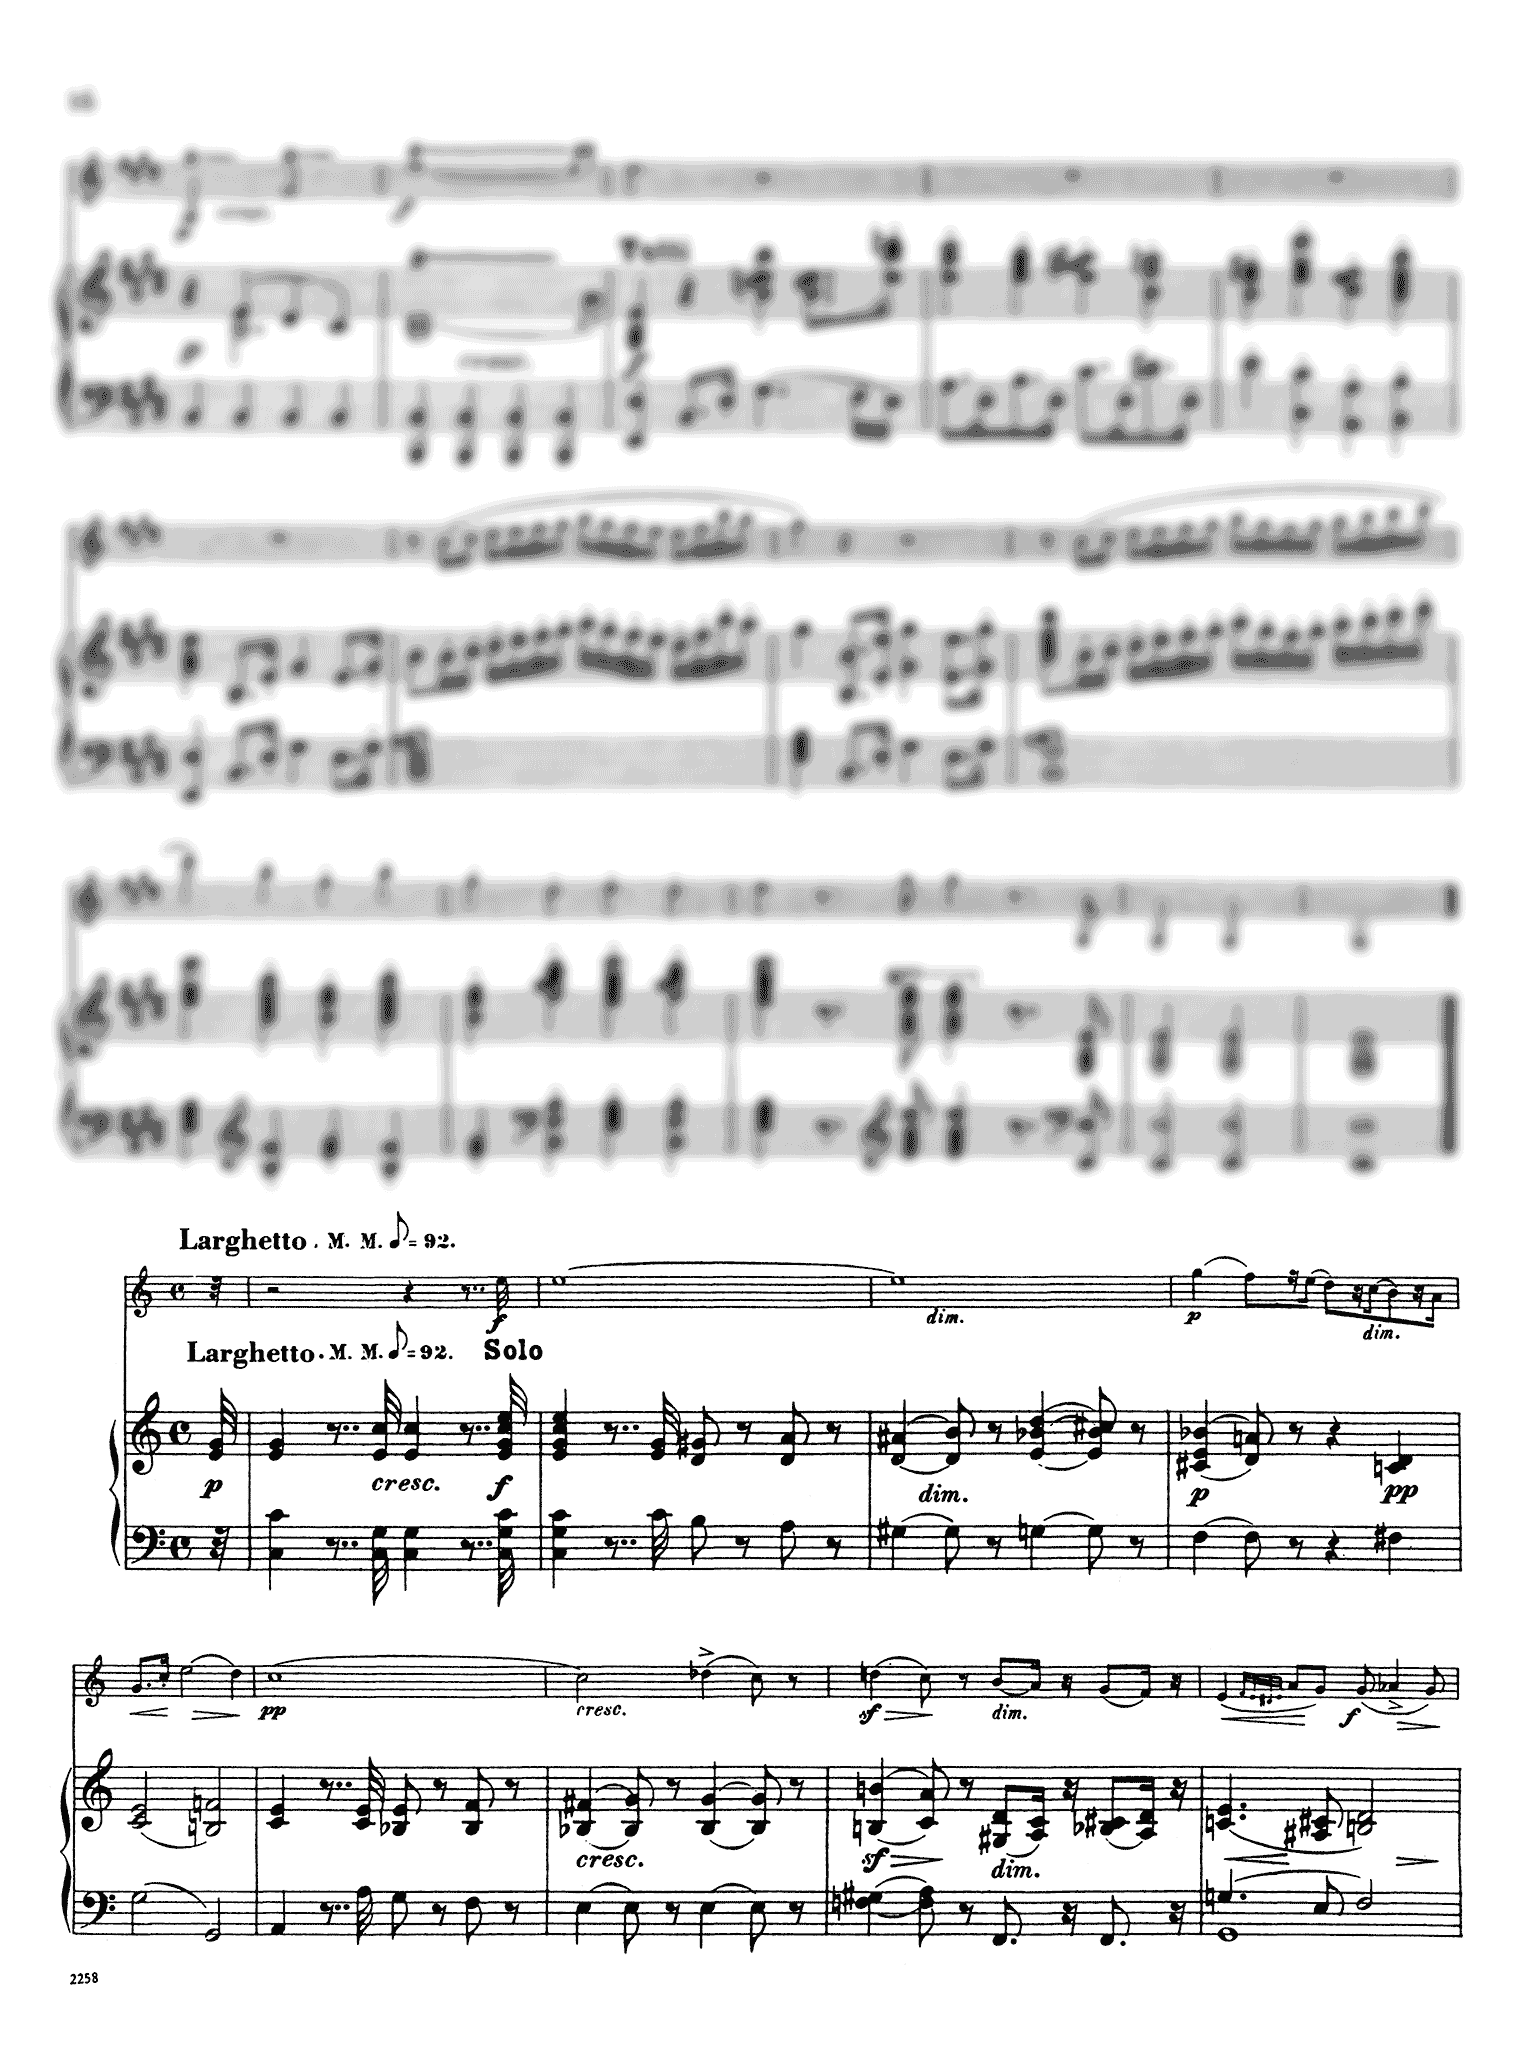 Clarinet Concerto No. 4 in E Minor, WoO 20 - Movement 2